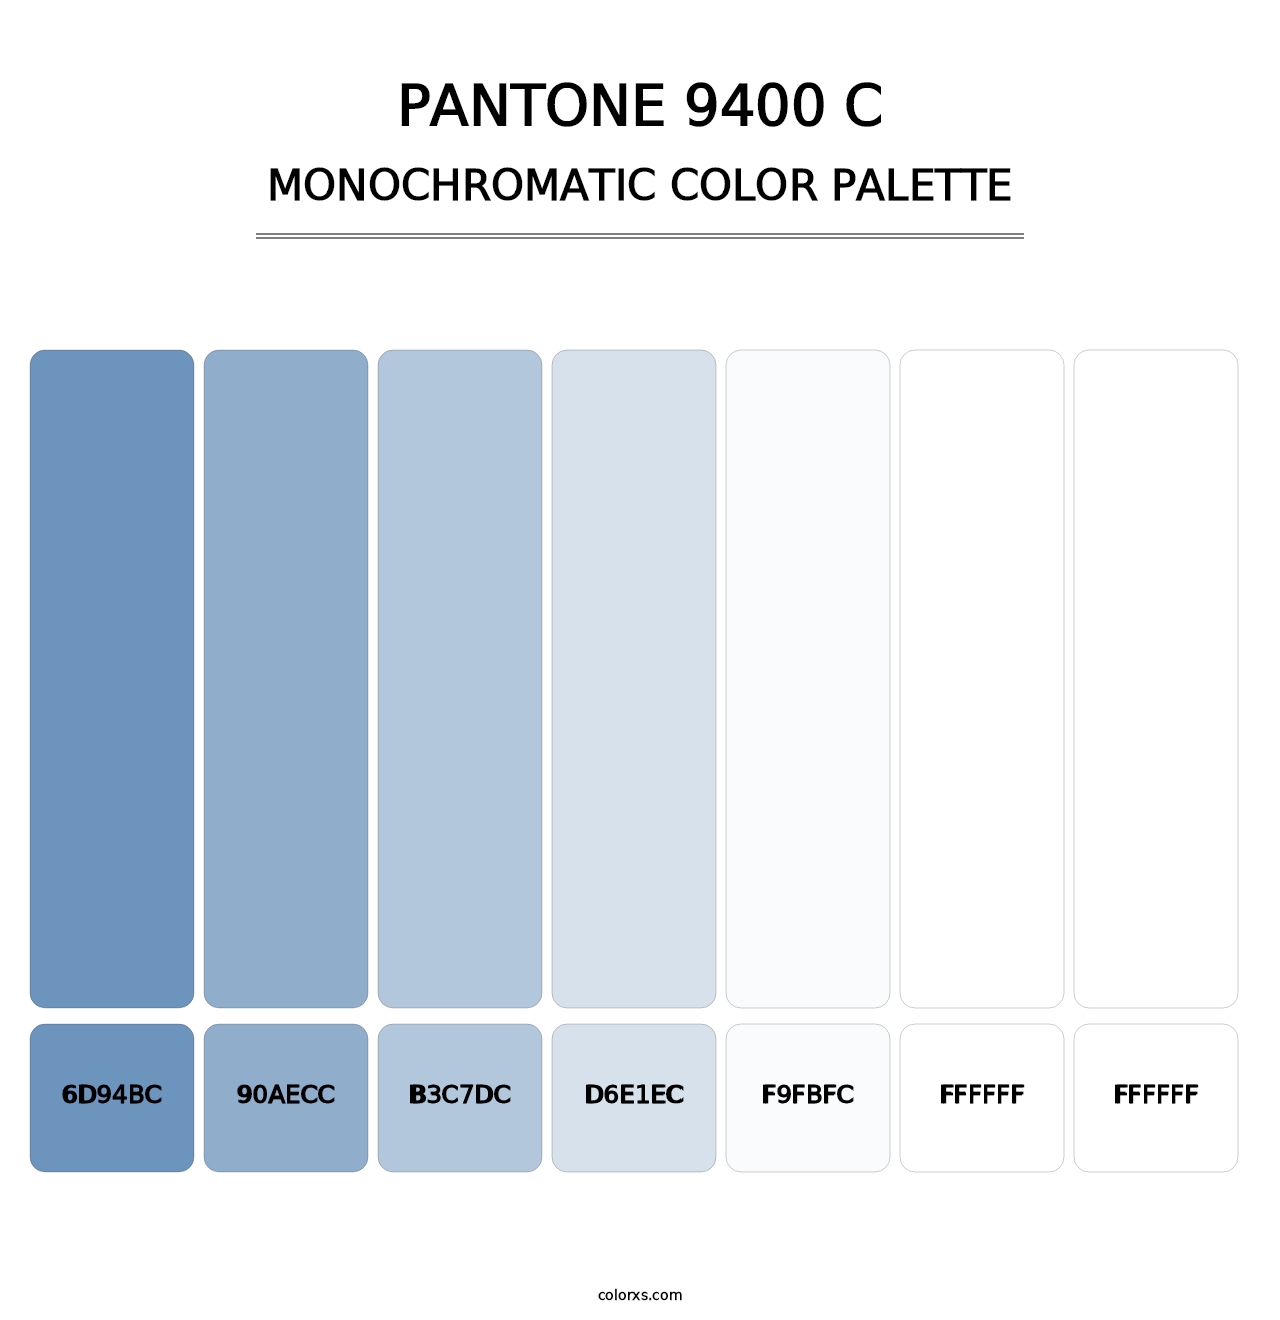 PANTONE 9400 C - Monochromatic Color Palette